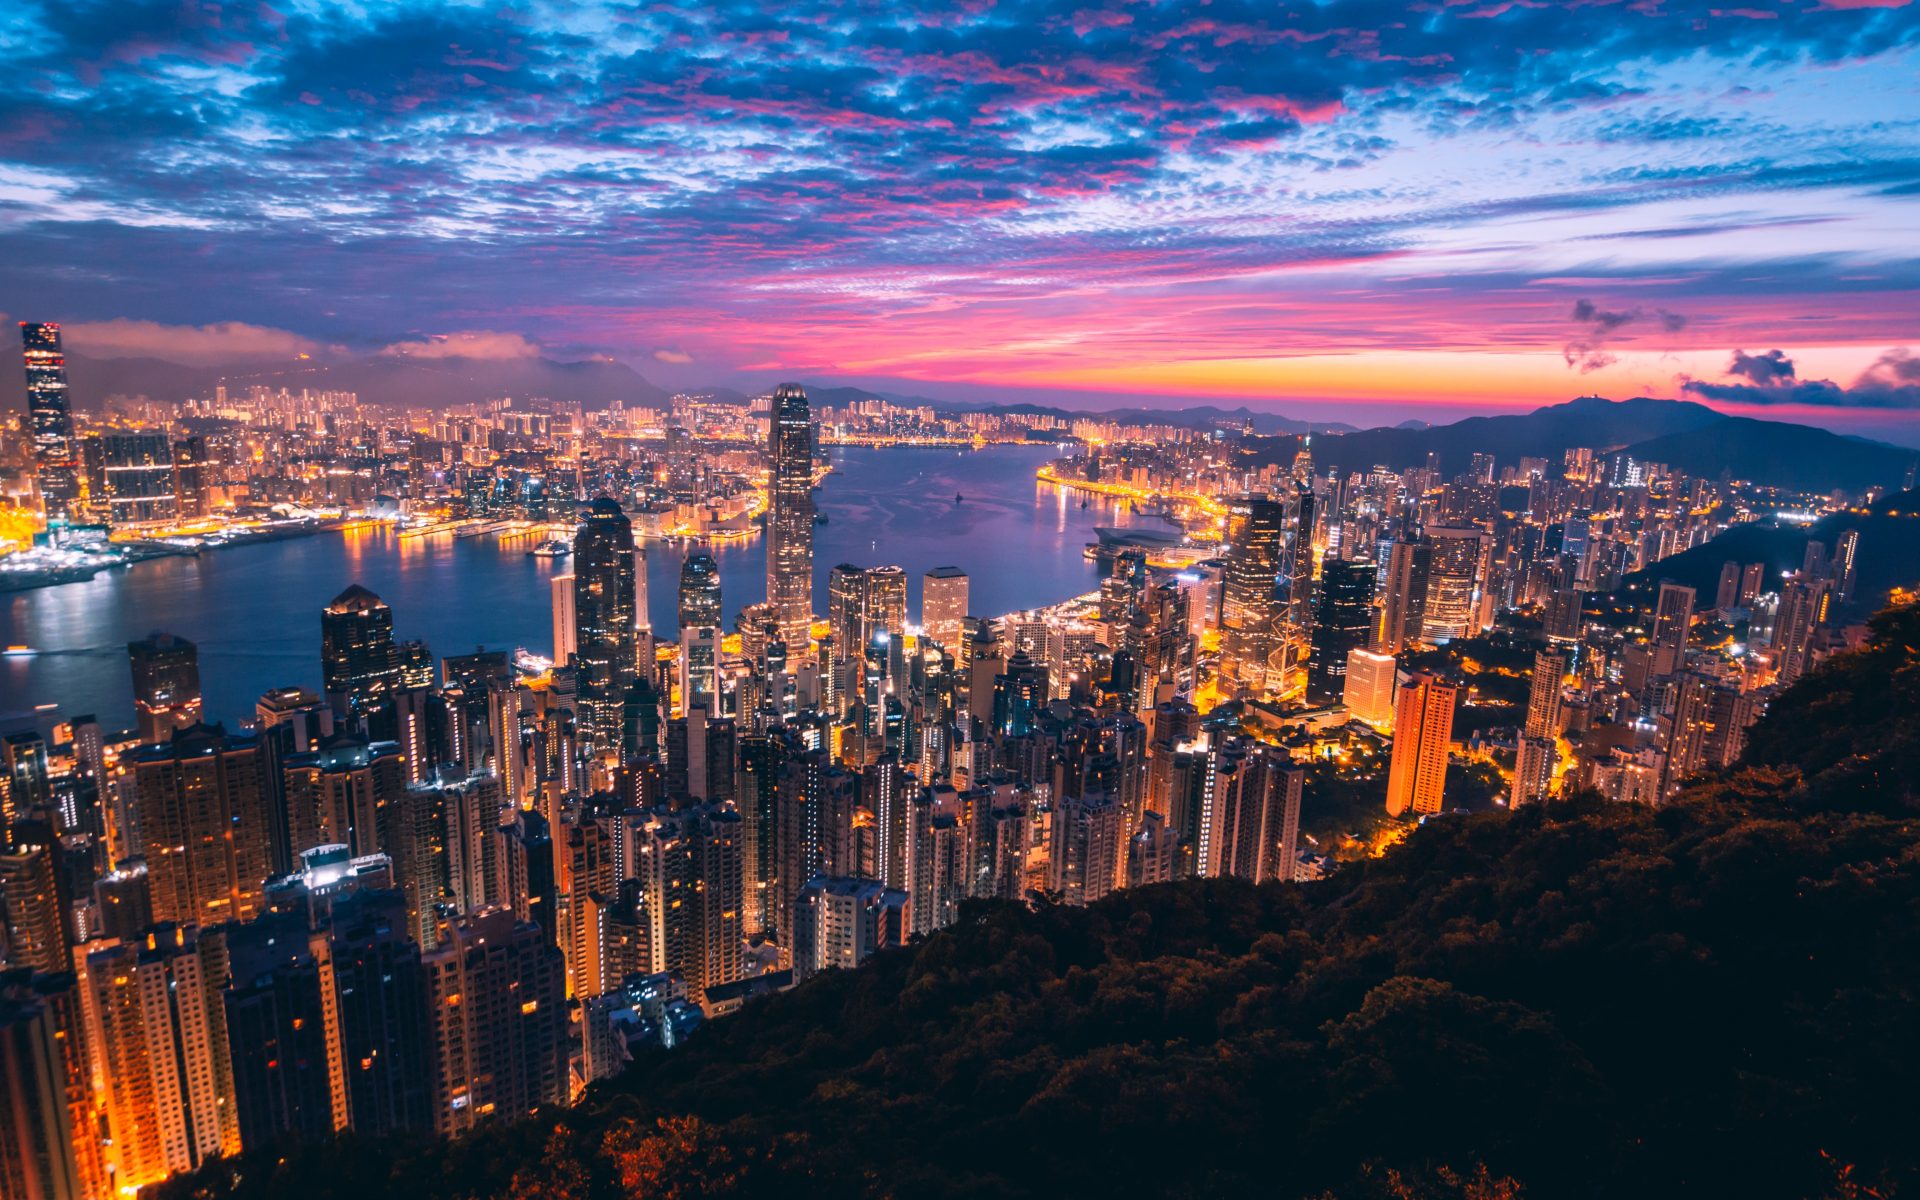 Hong Kong Travel Advisory & Safety Checklist